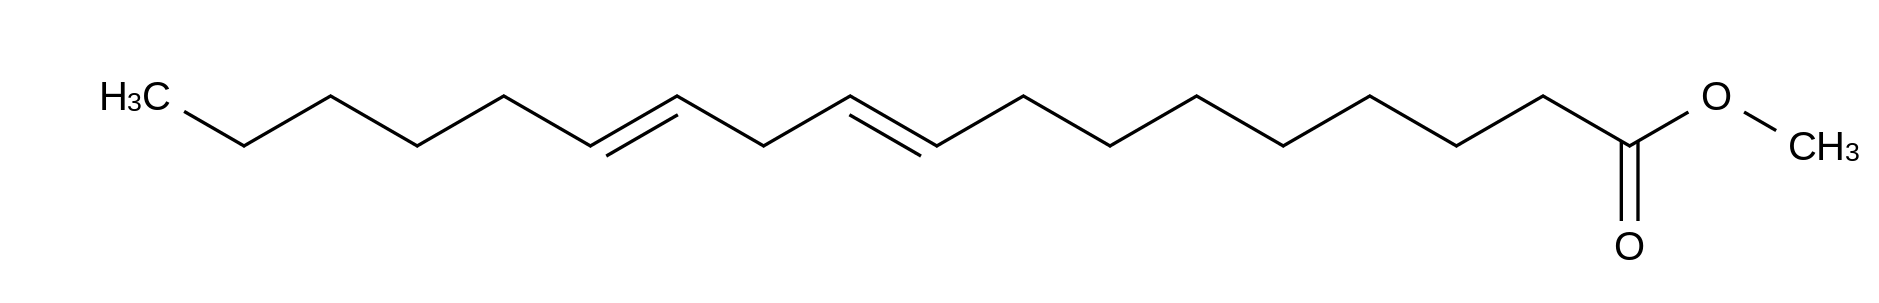 Methyl trans,trans-9,12-Octadecadienoate